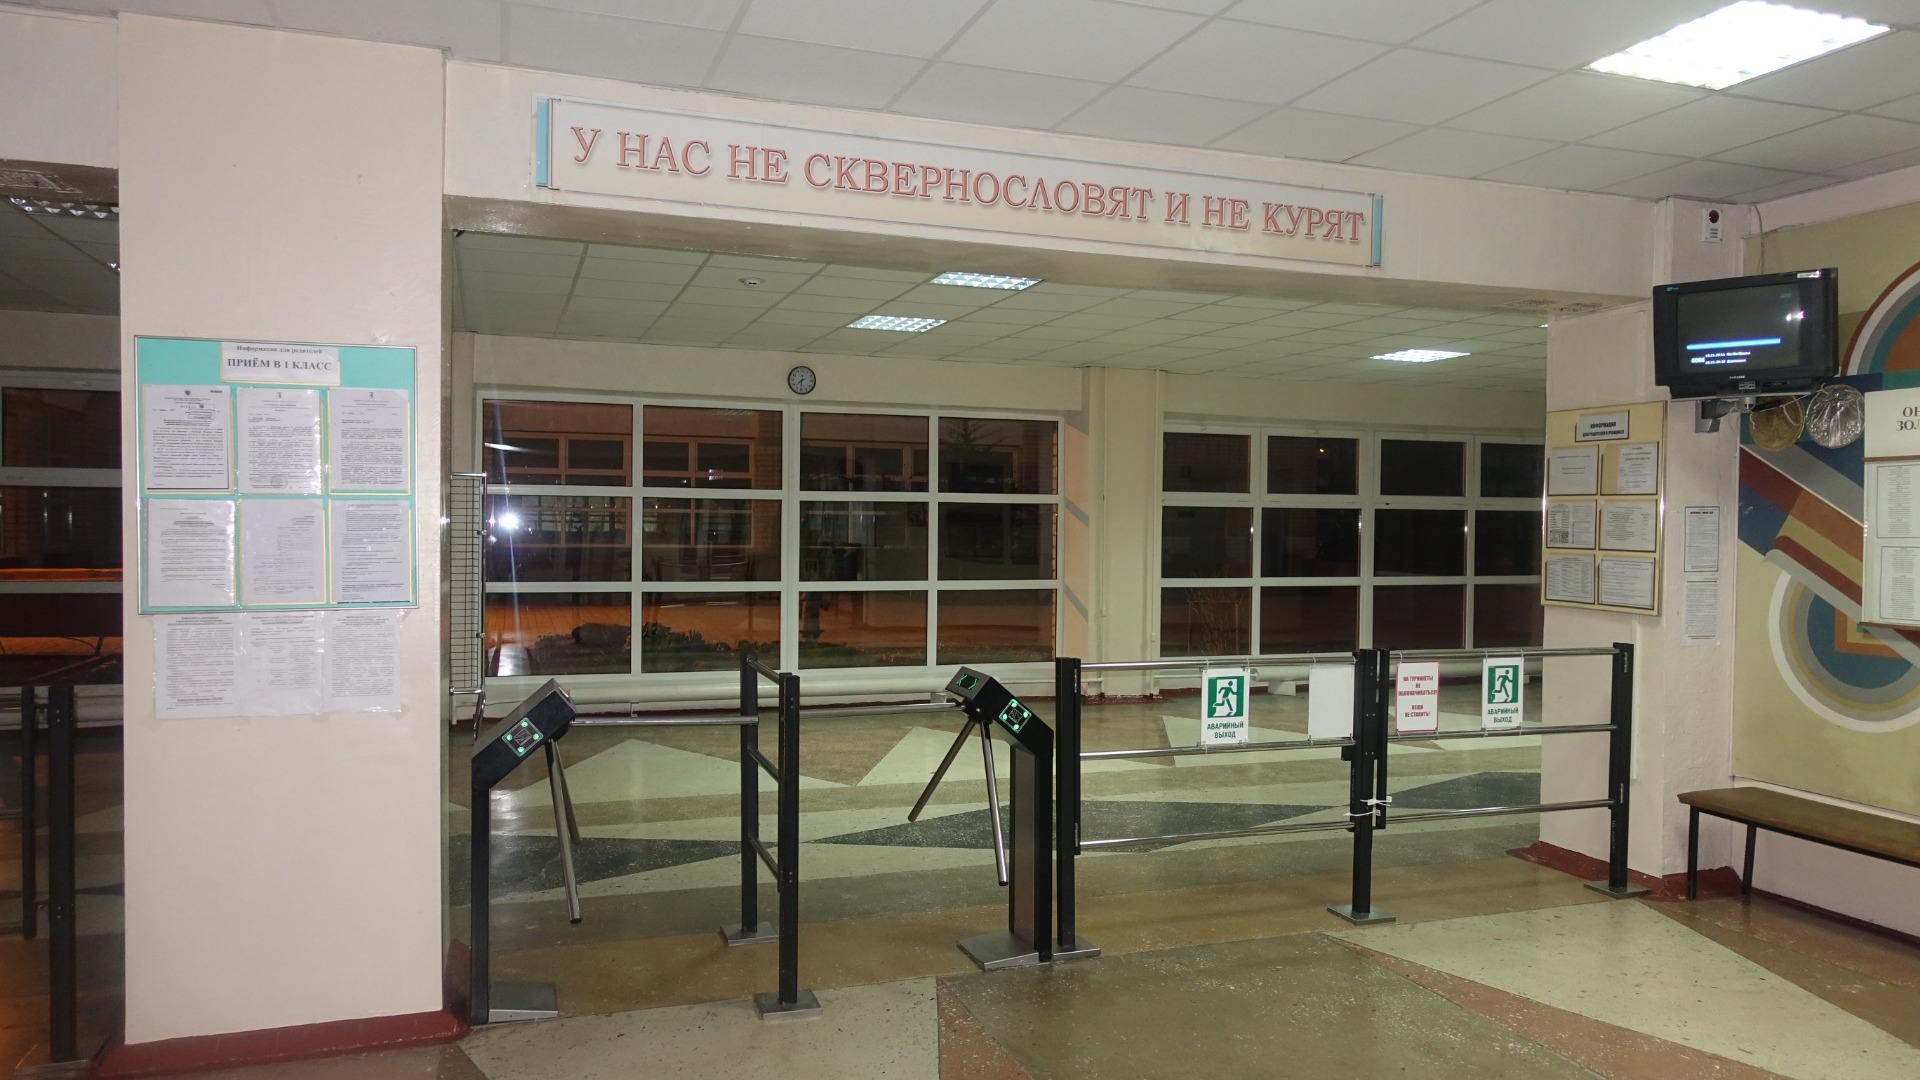 88,3 млн рублей потратят на систему контроля доступа для школ в Нижнем Новгороде